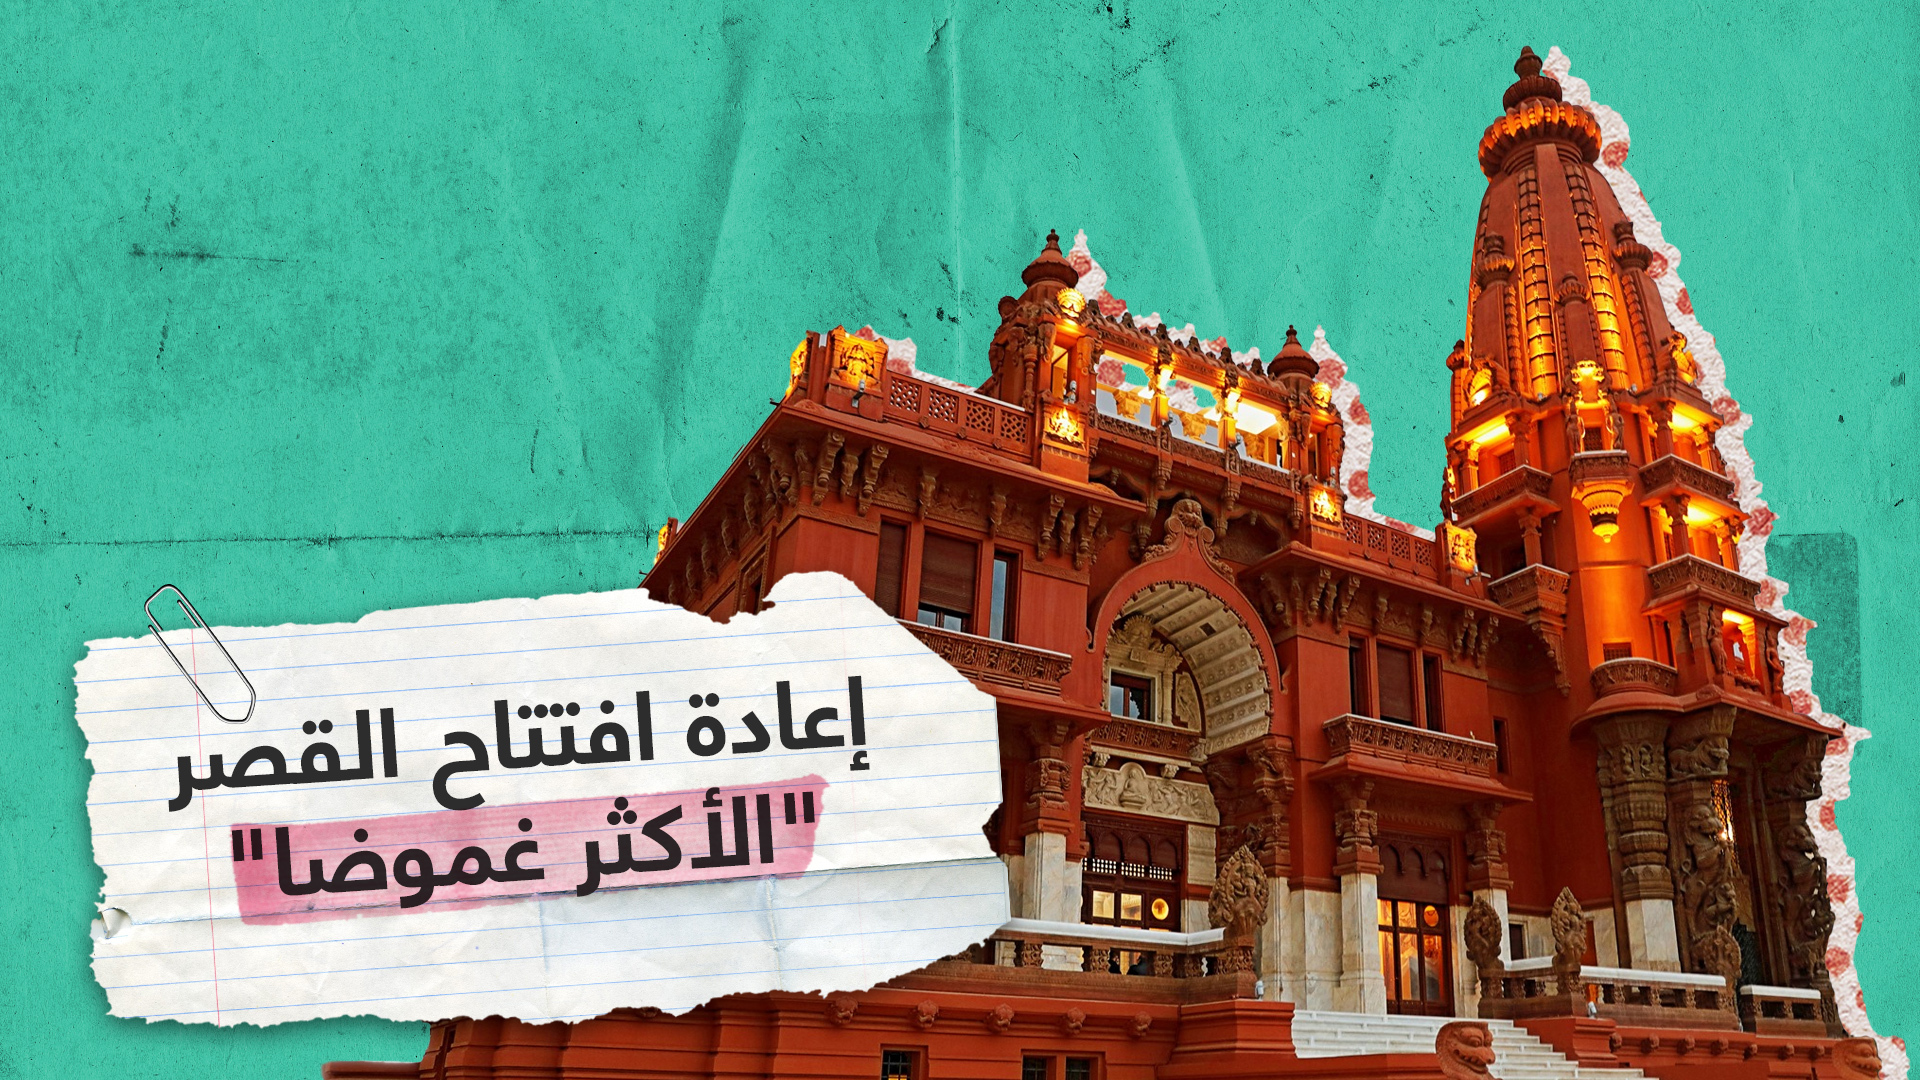 مصر تعيد افتتاح قصر البارون إمبان التاريخي